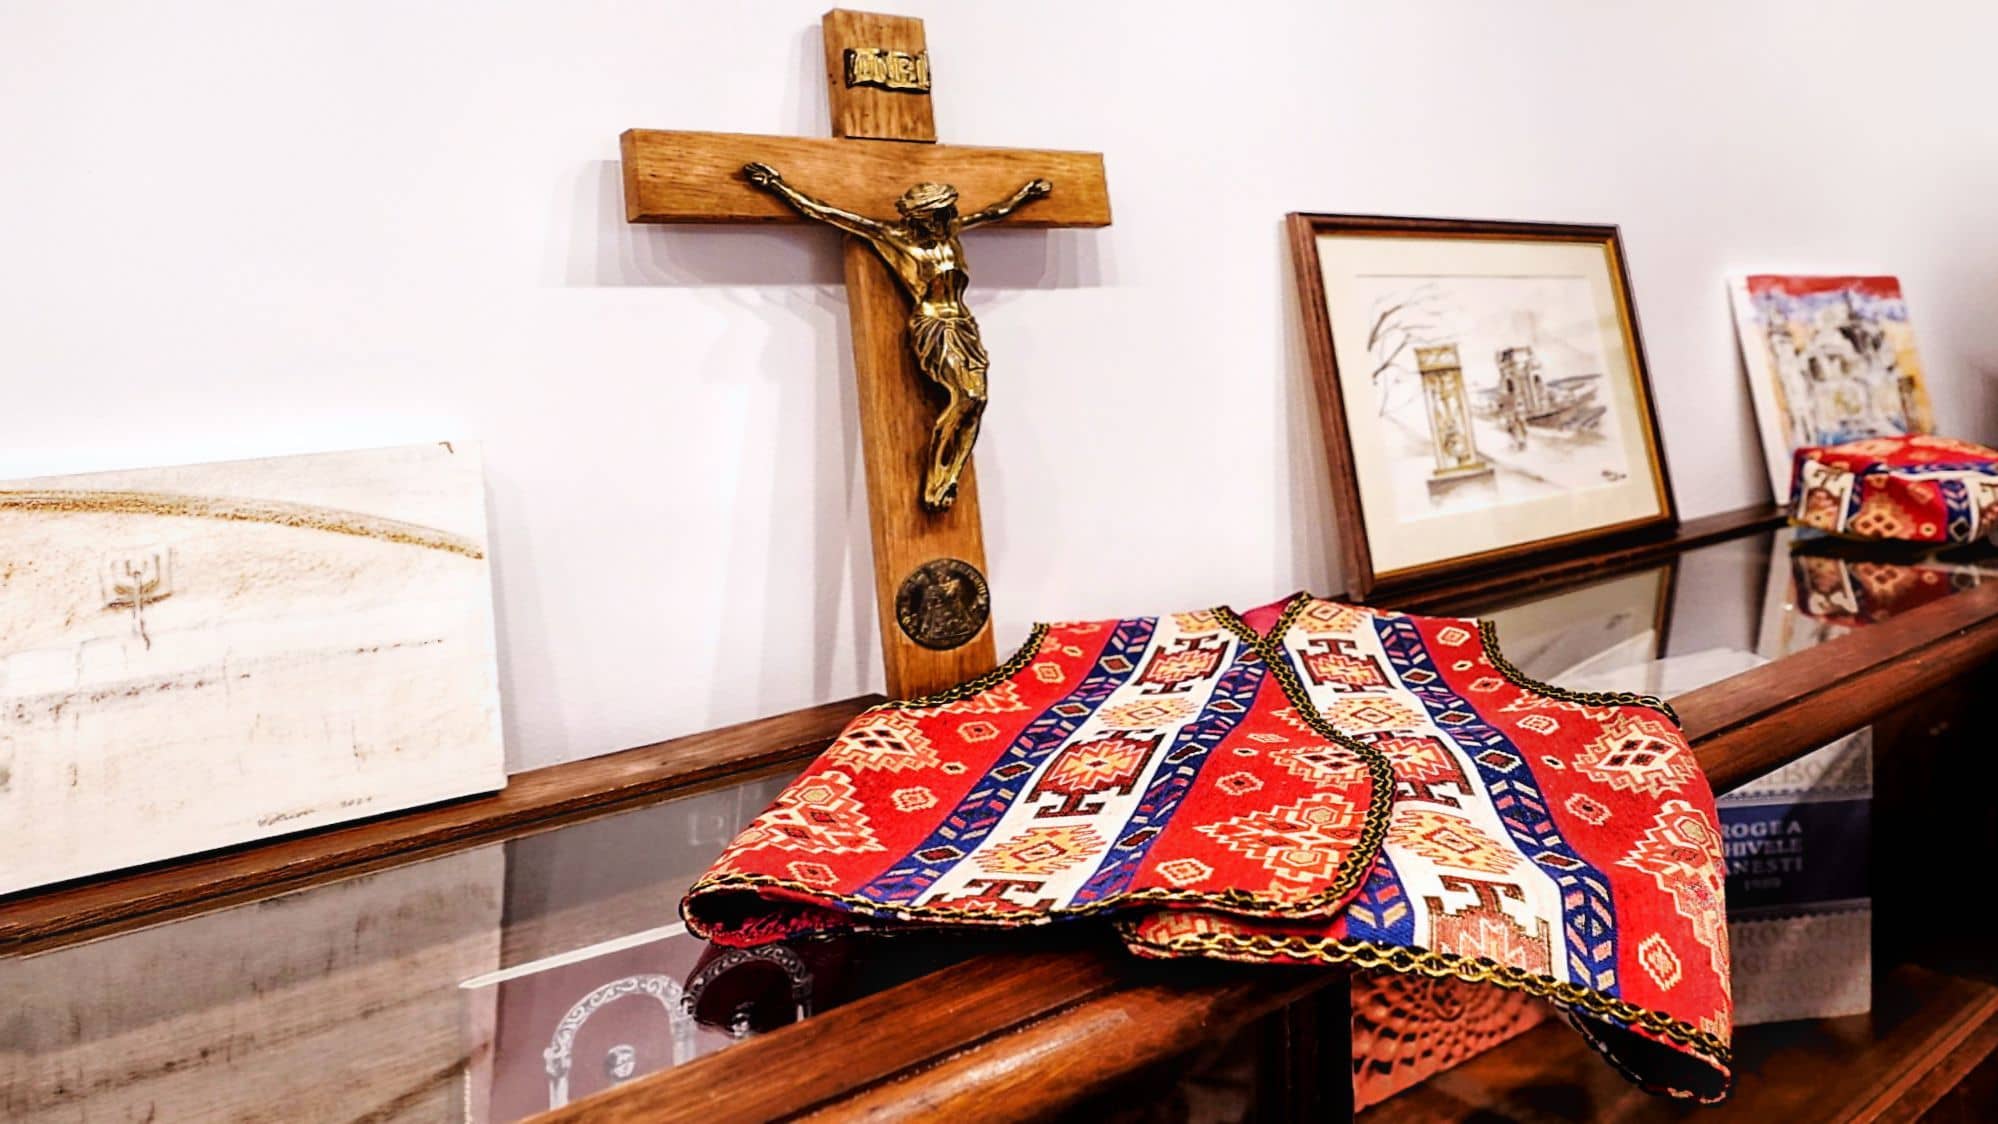 Moștenirea și poveștile armenilor din Dobrogea, prezentate într-o expoziție permanentă în Constanța